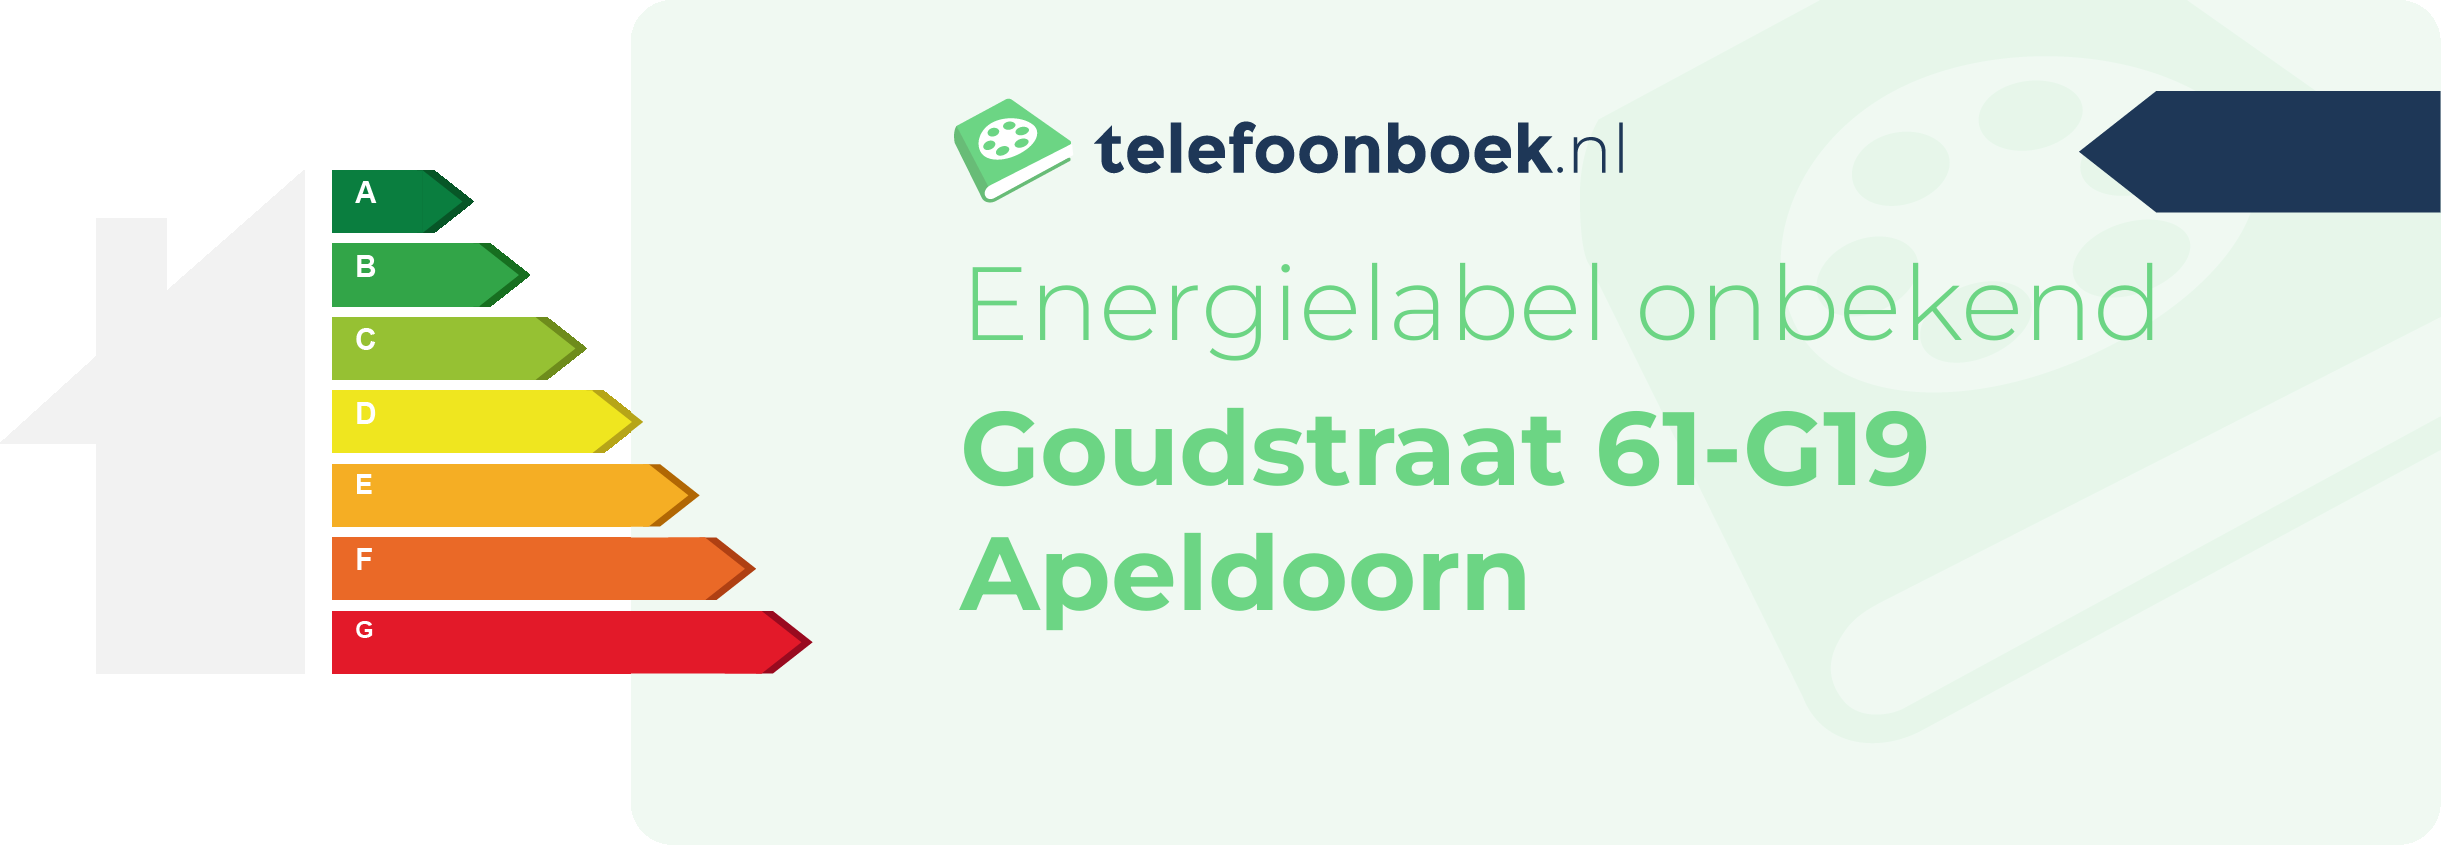 Energielabel Goudstraat 61-G19 Apeldoorn